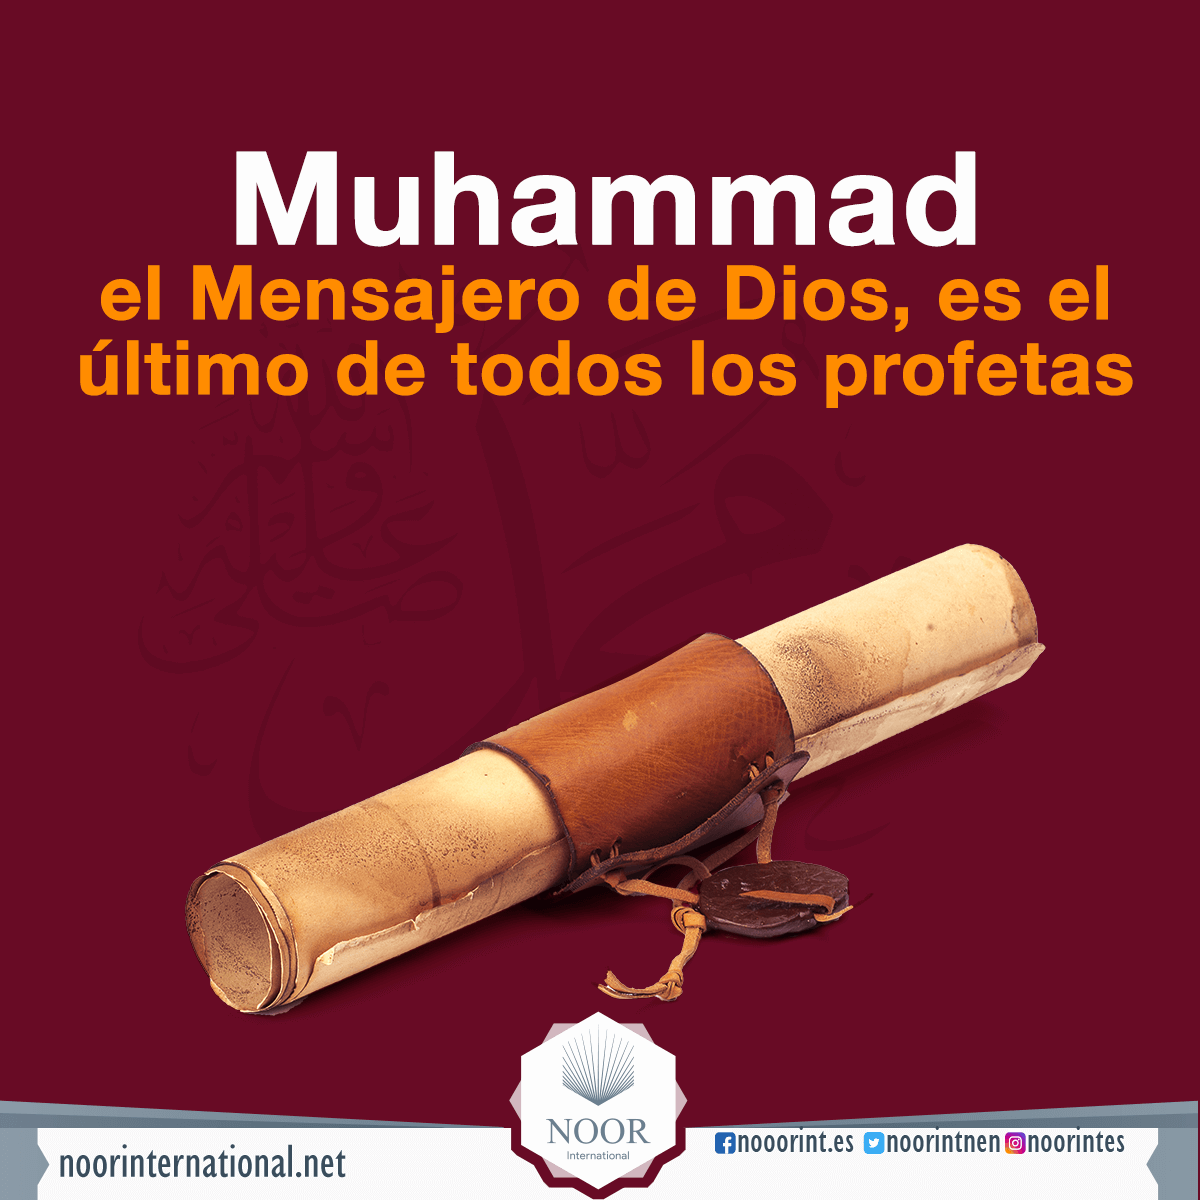 Muhammad, el Mensajero de Dios, es el último de todos los profetas